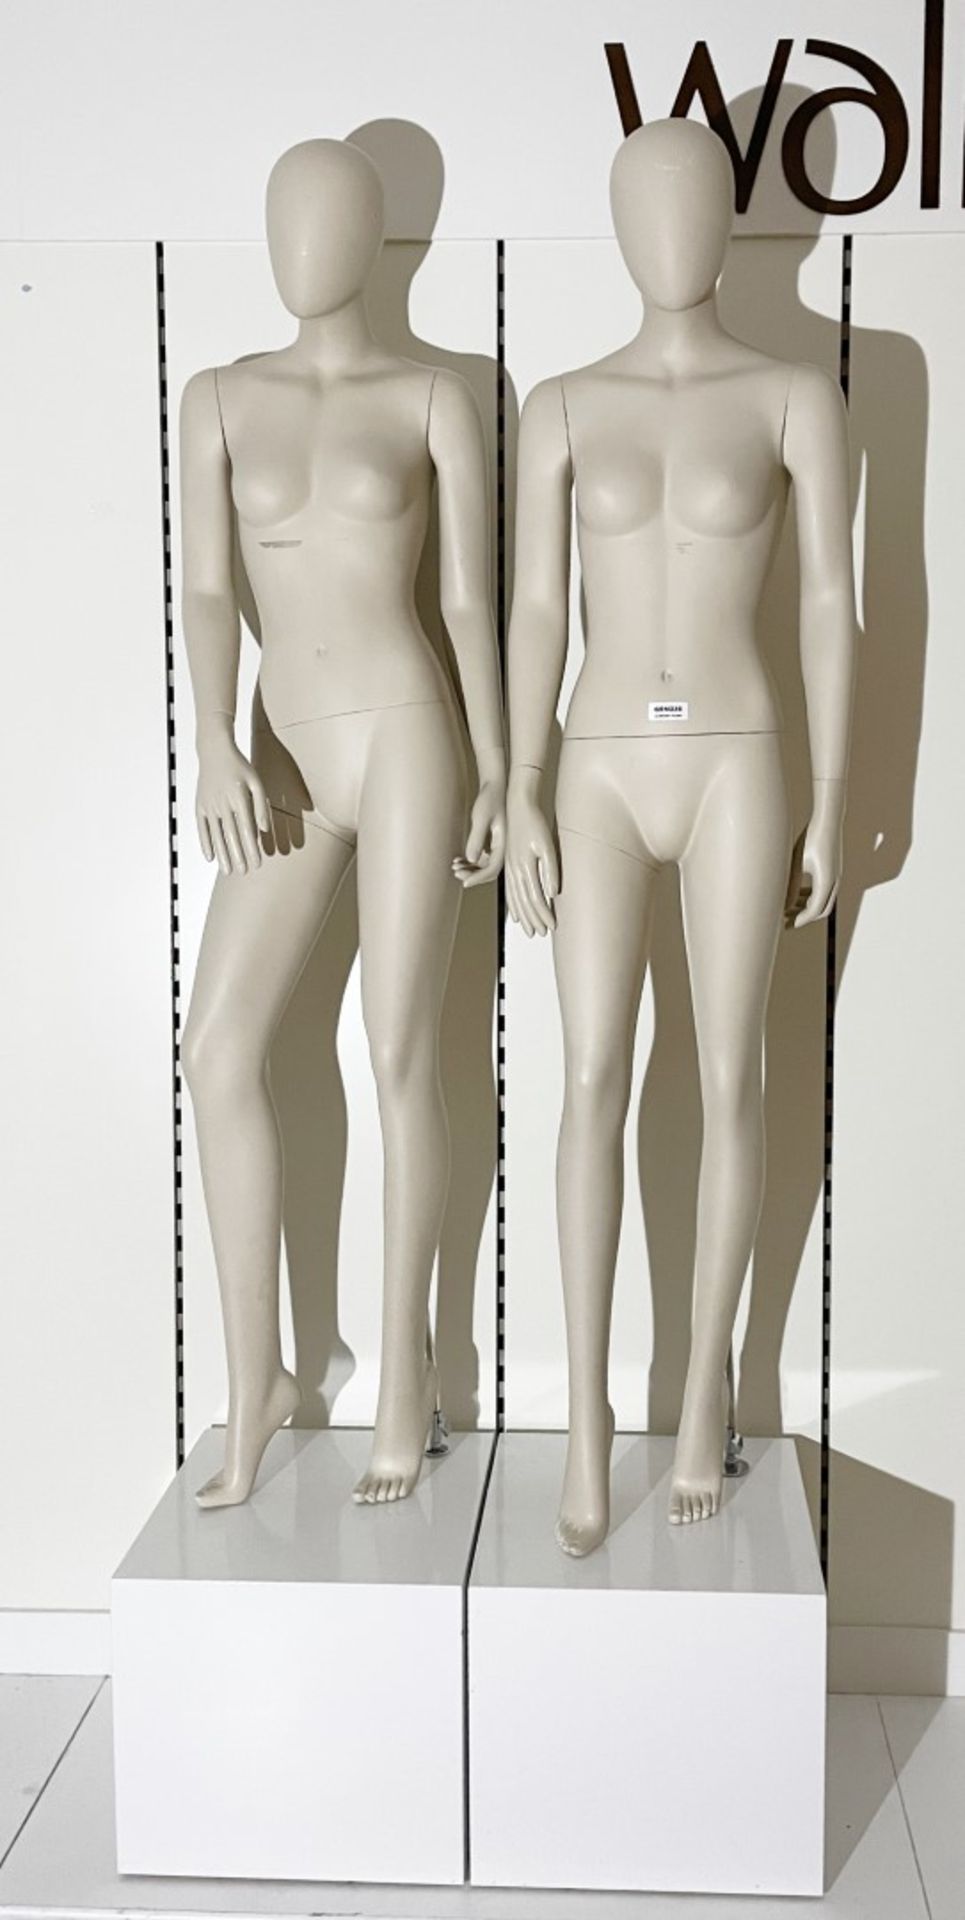 2 x Full Size Female Mannequins on Pedestal Plinth Stands - CL670 - Ref: GEM236 - Location: